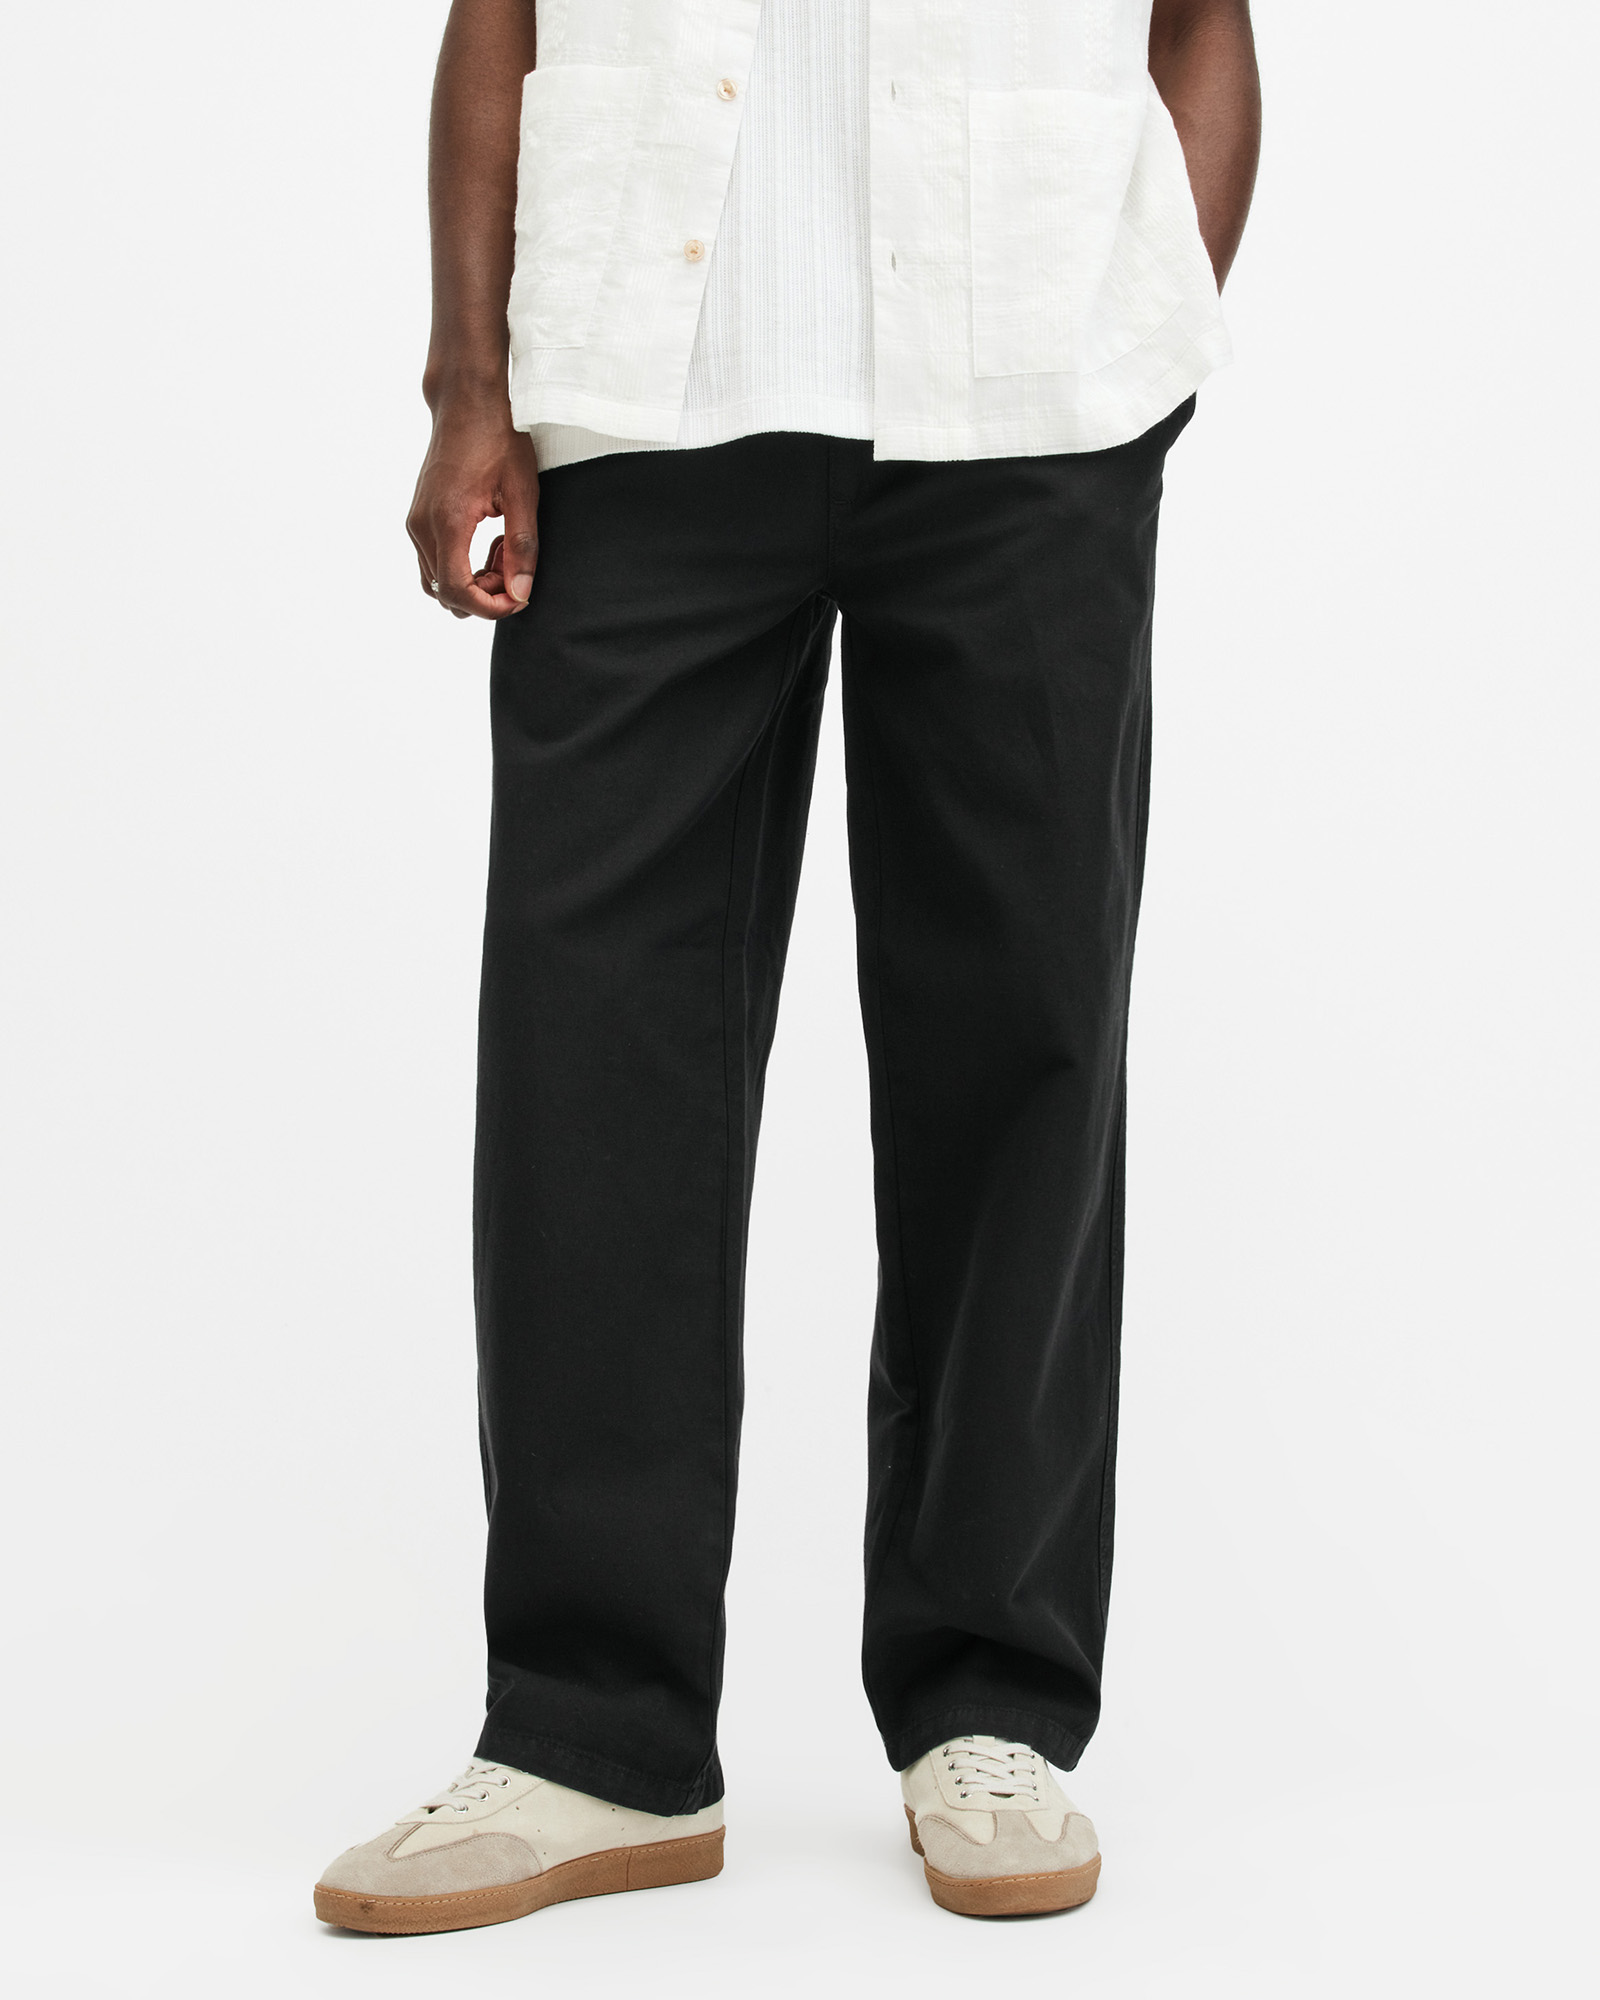 AllSaints Hanbury Fit Trousers,, Size: